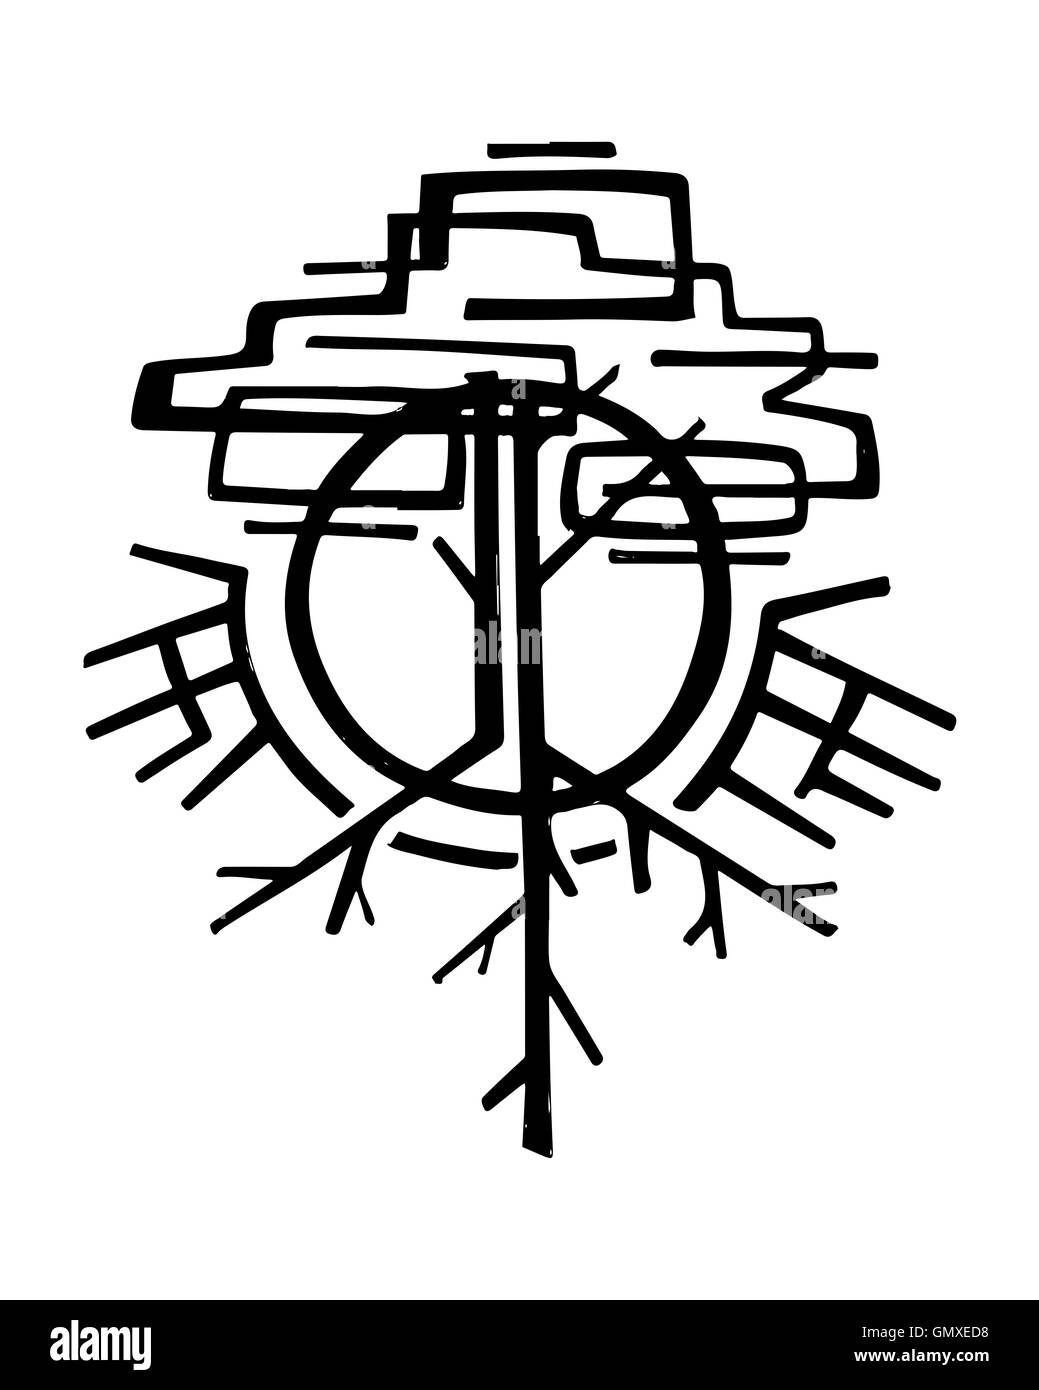 Illustration à la main ou d'un dessin d'un arbre symbolique abstrait Banque D'Images